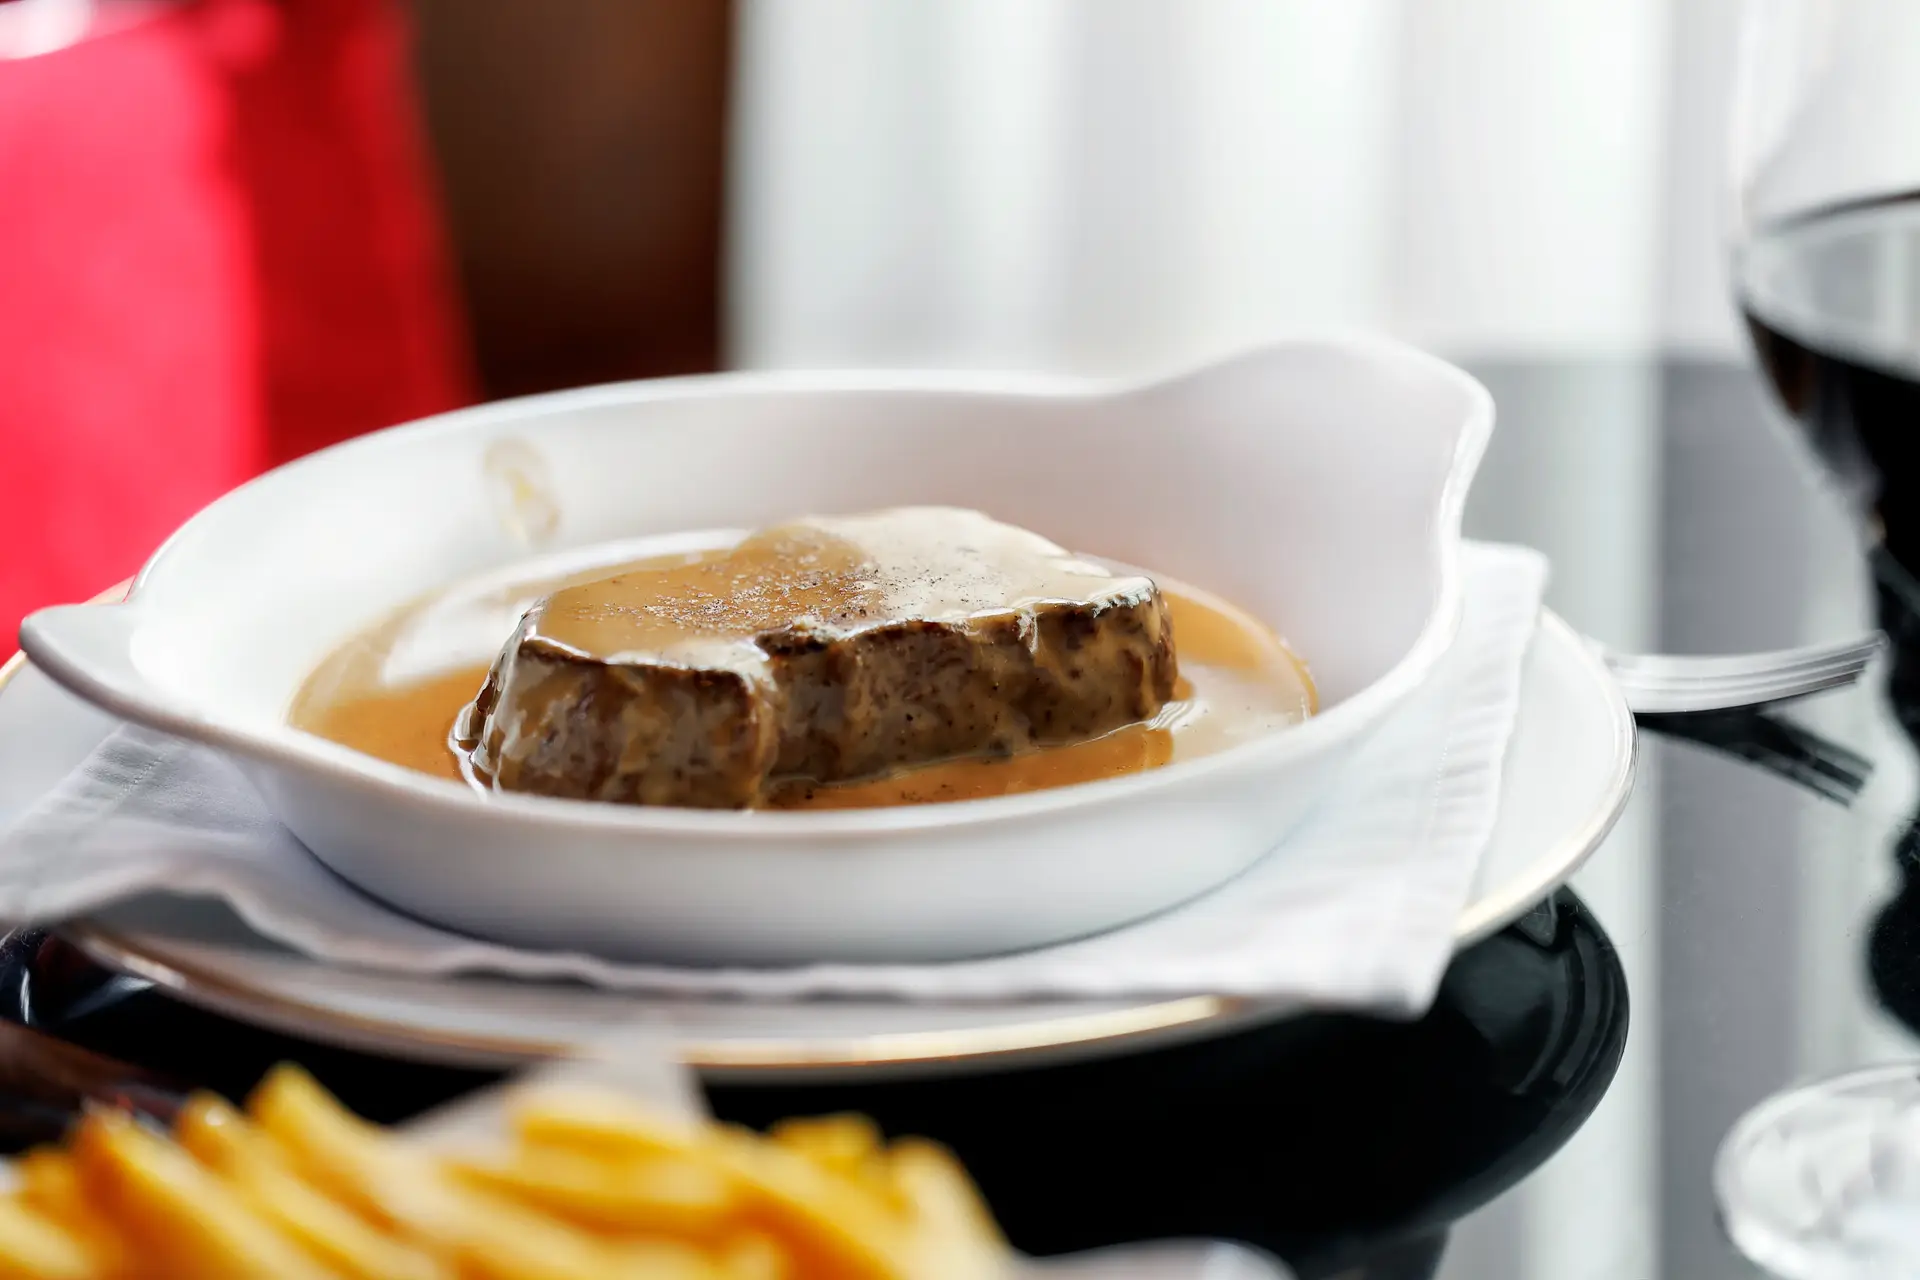 O mais brilhante “Bife à Marrare” serve-se neste novo e discreto restaurante do Cais do Sodré